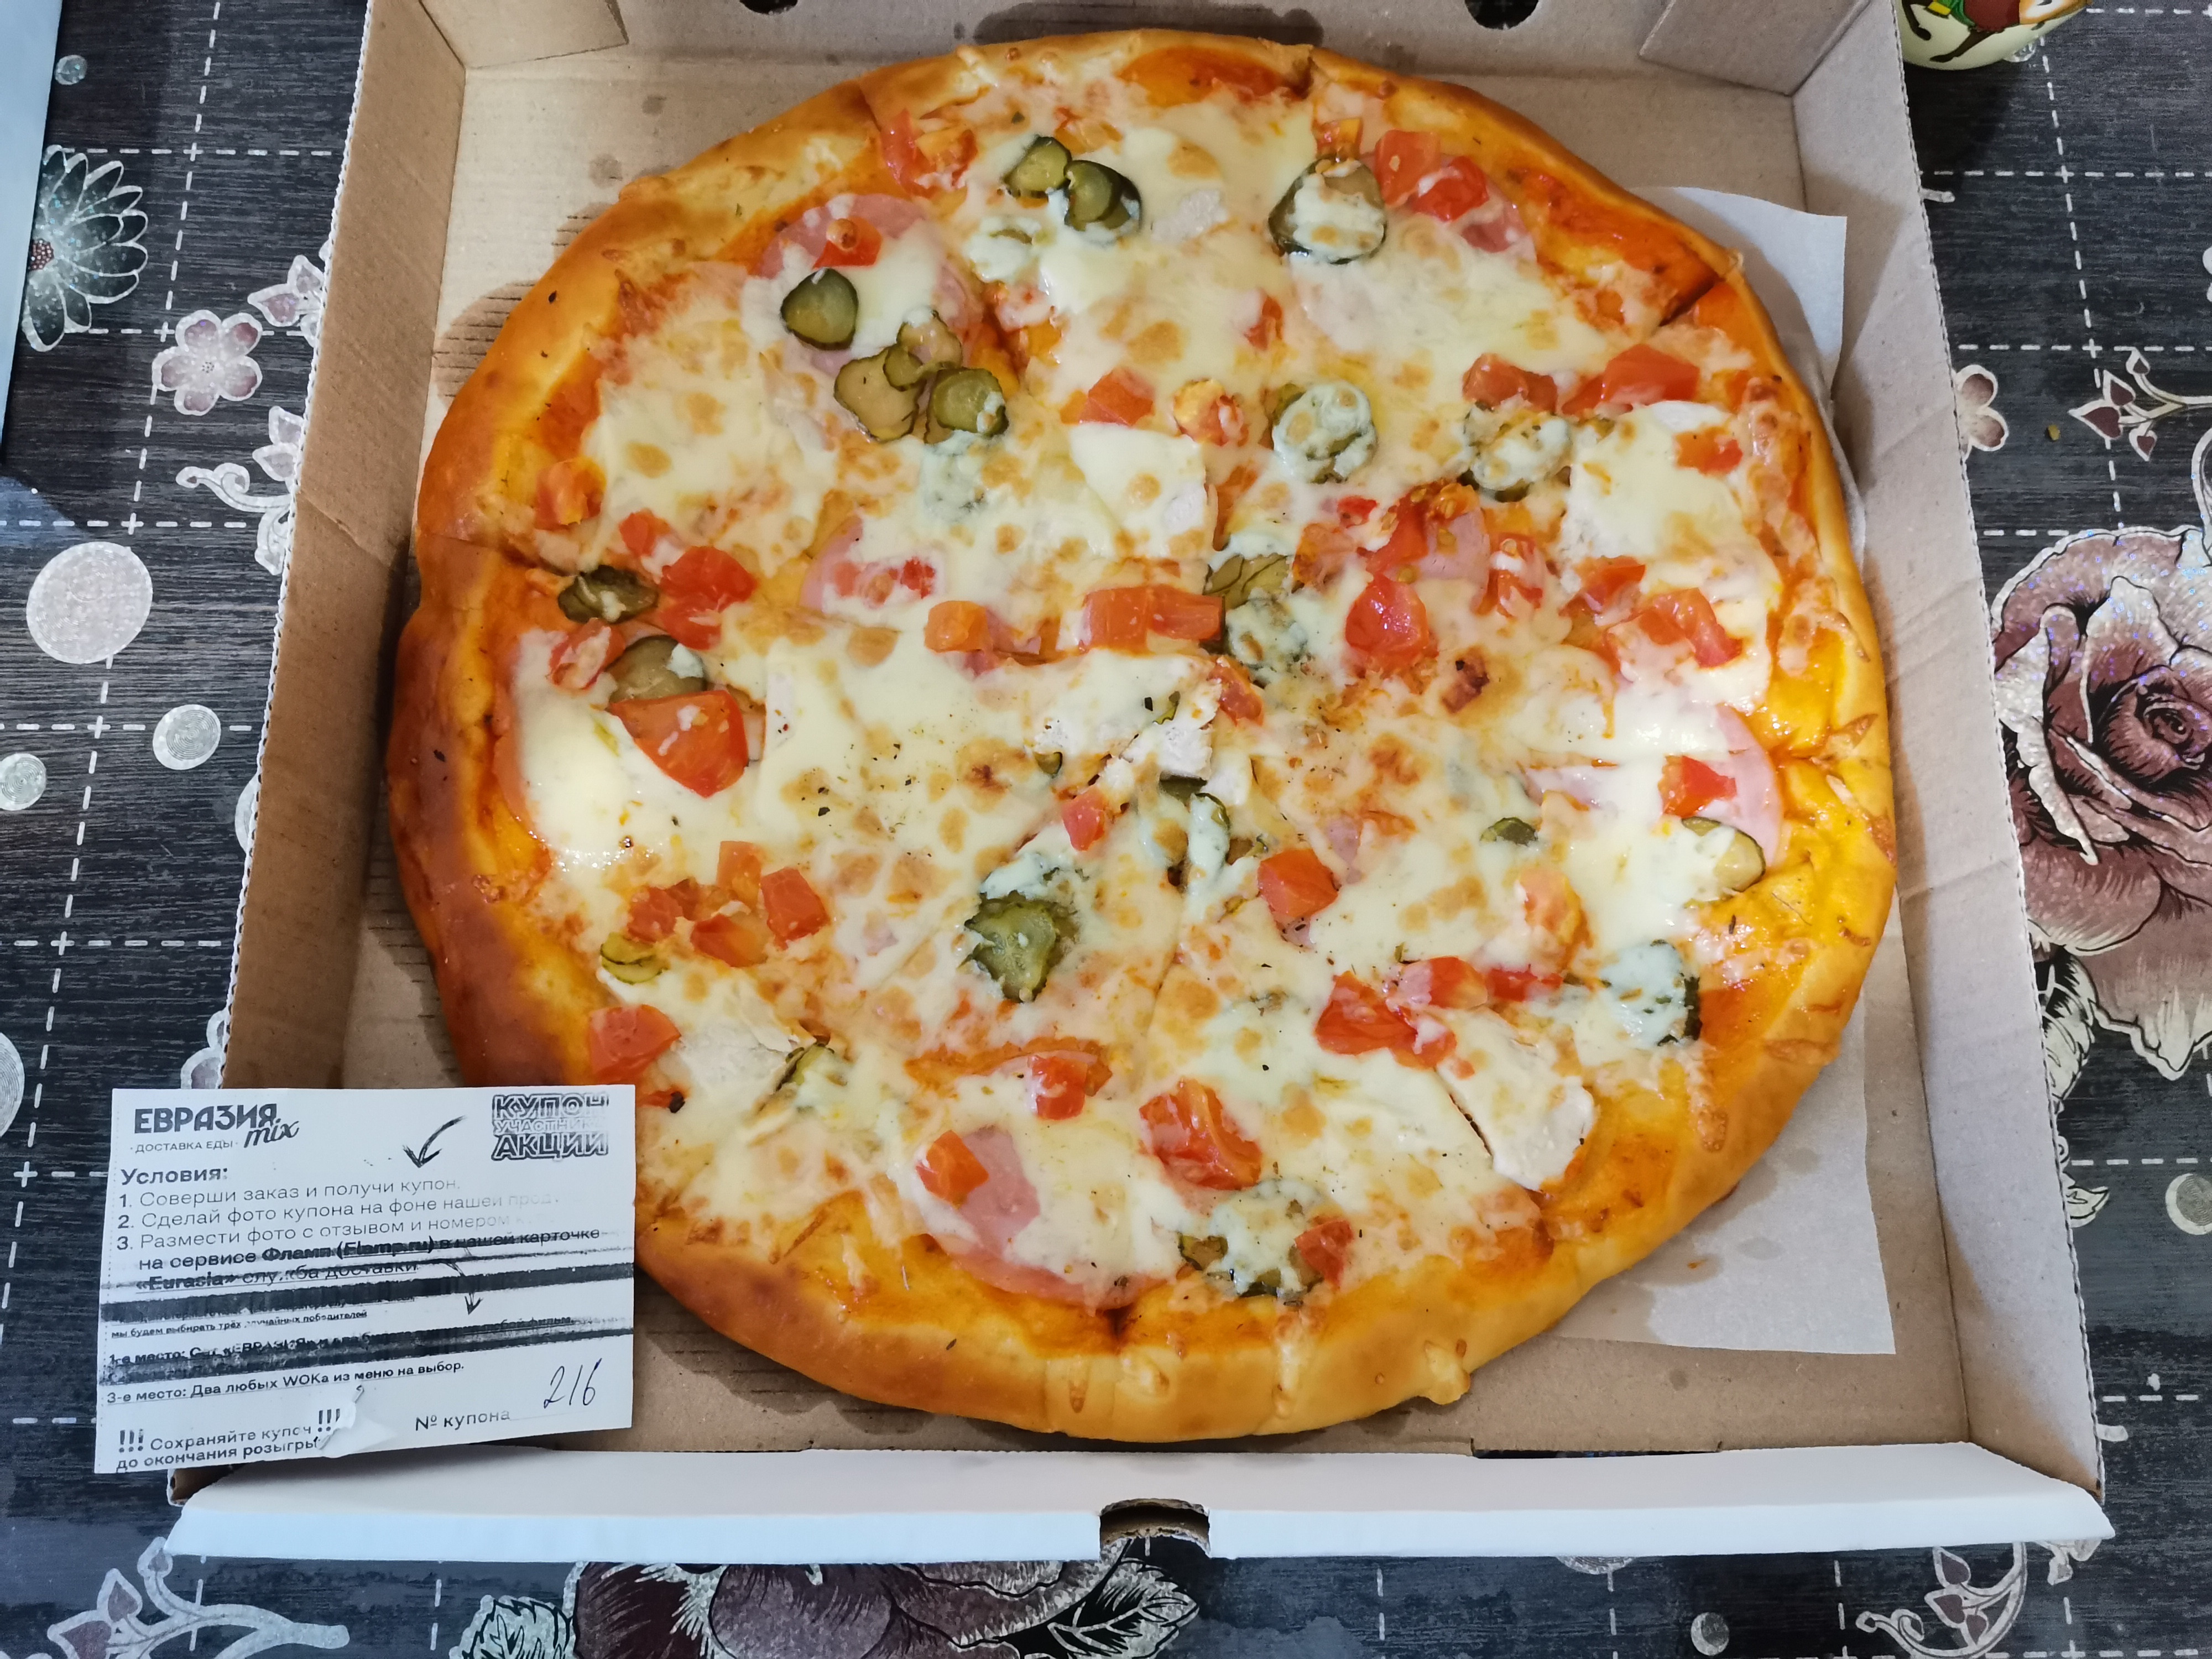 Вкусная пицца в спб с доставкой отзывы